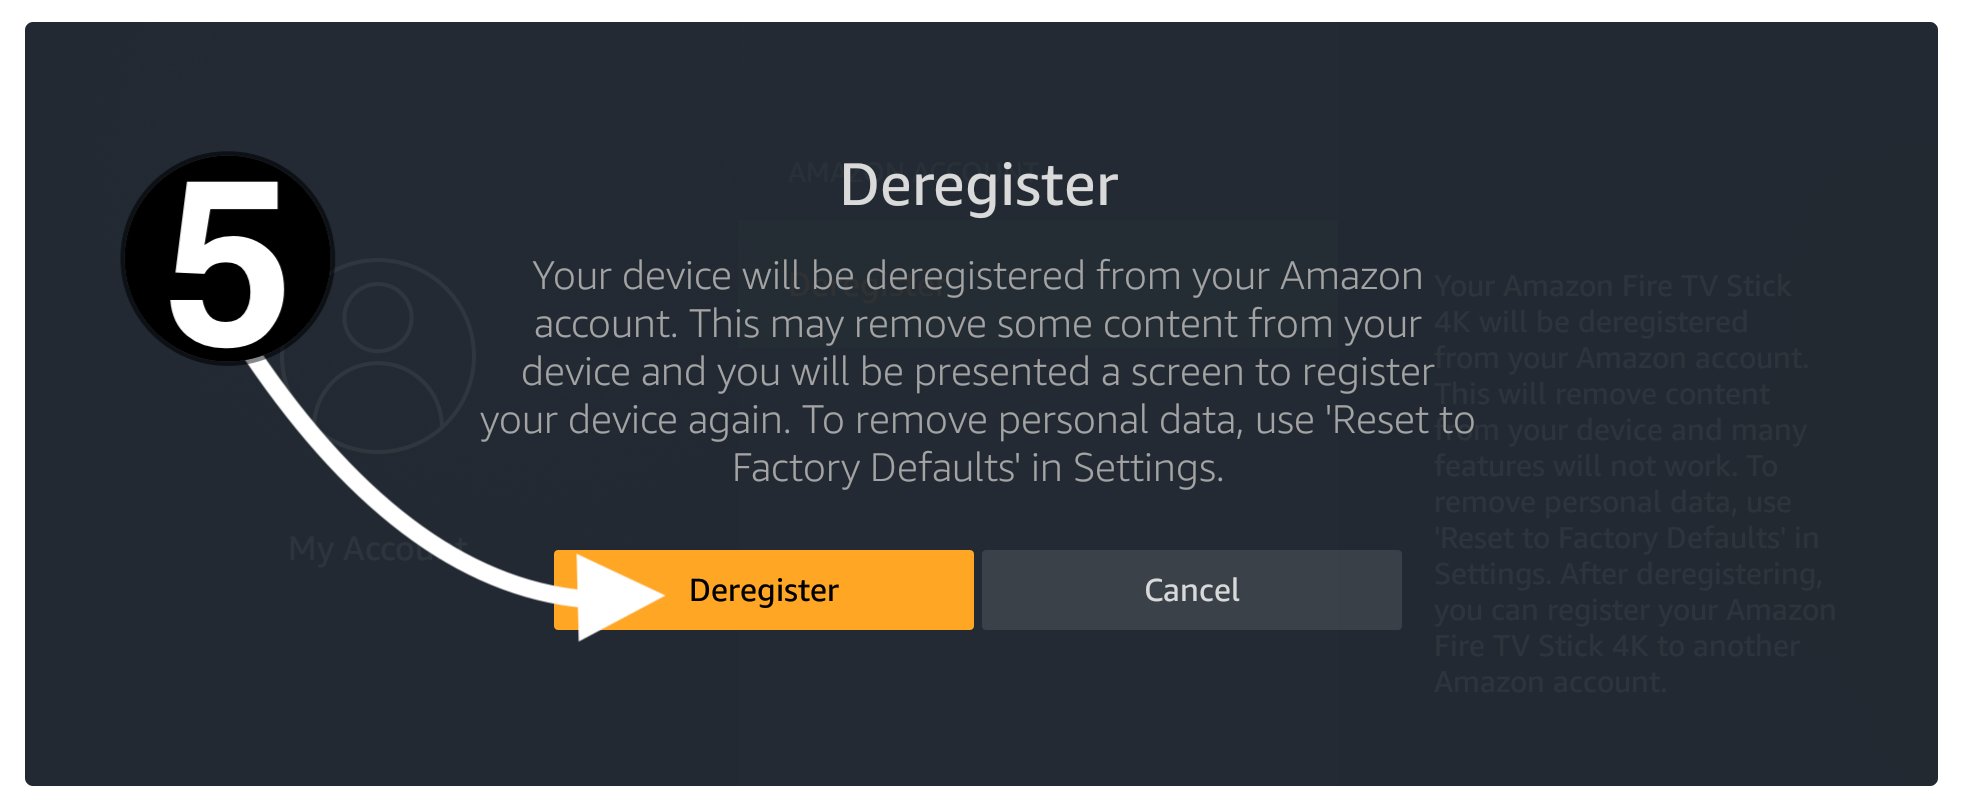 Deregister-Firestick-Account